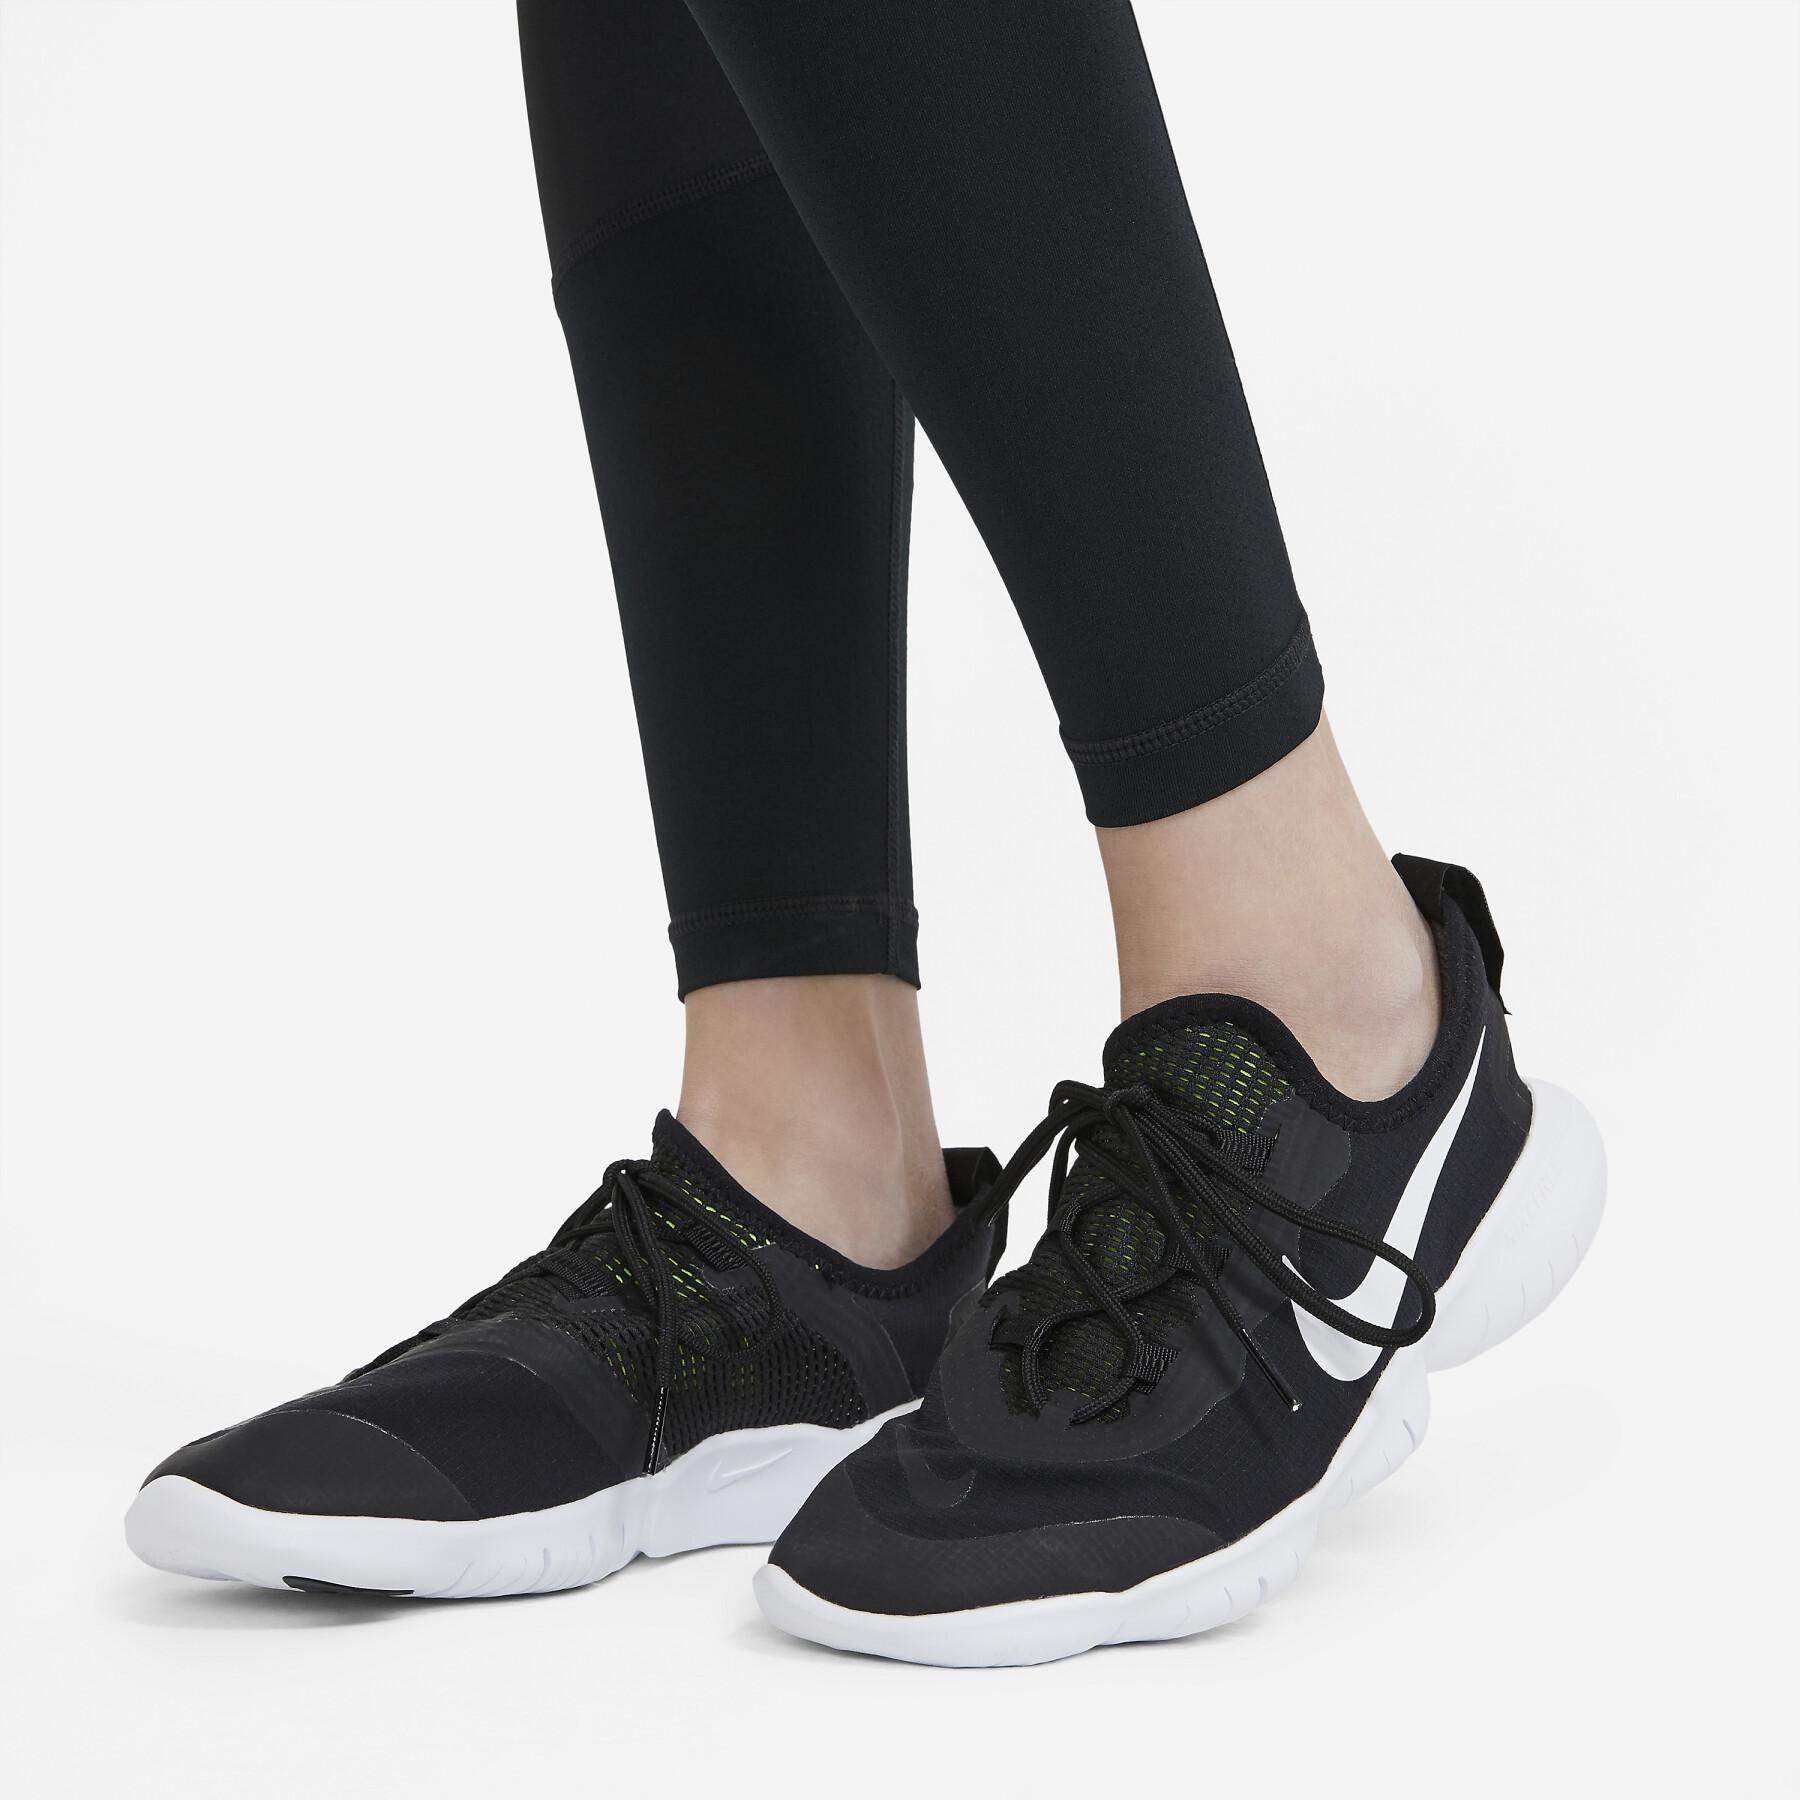 Leggings für Mädchen Nike Pro